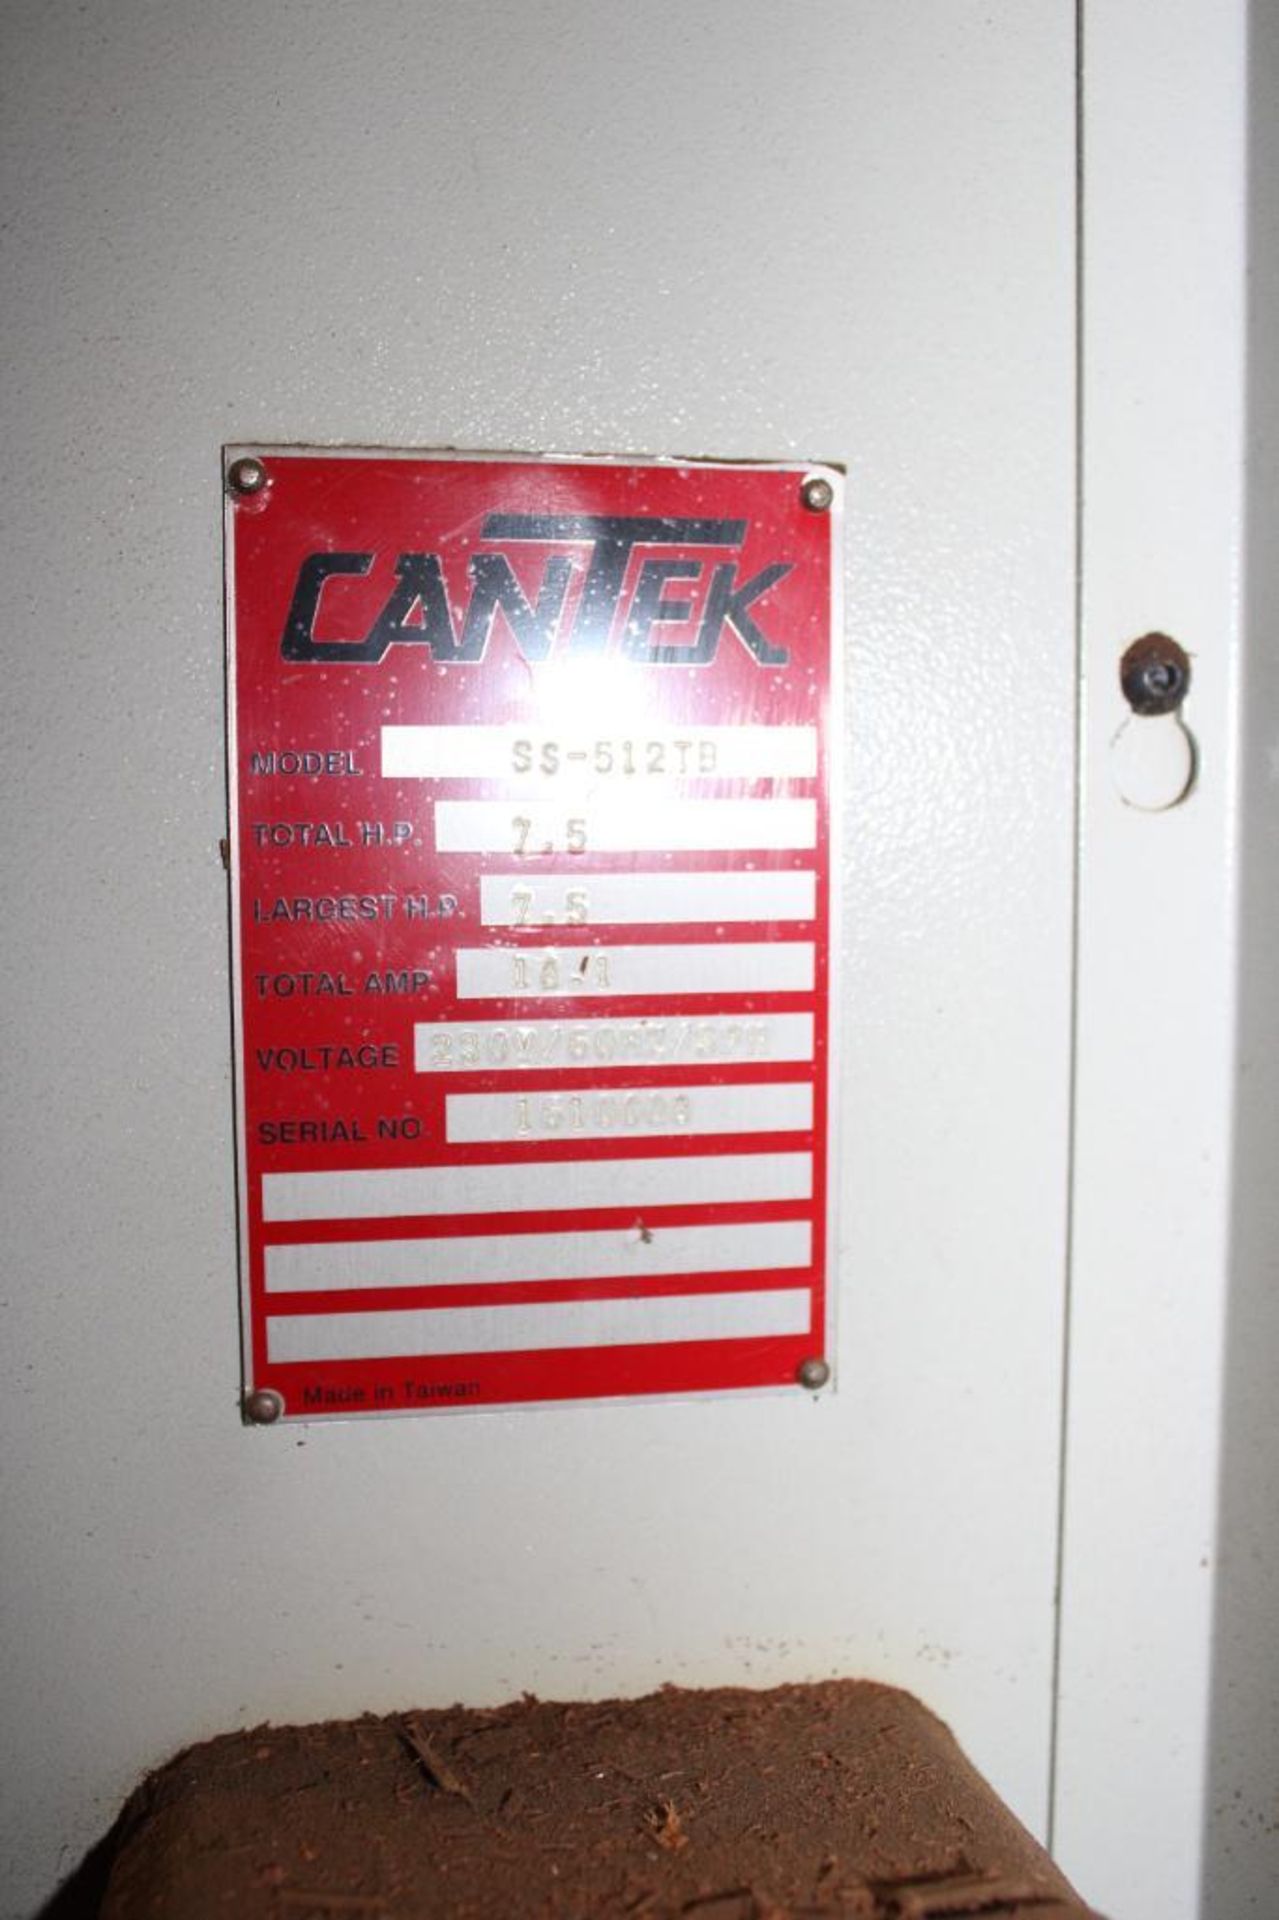 Cantek Shaper - Image 9 of 20